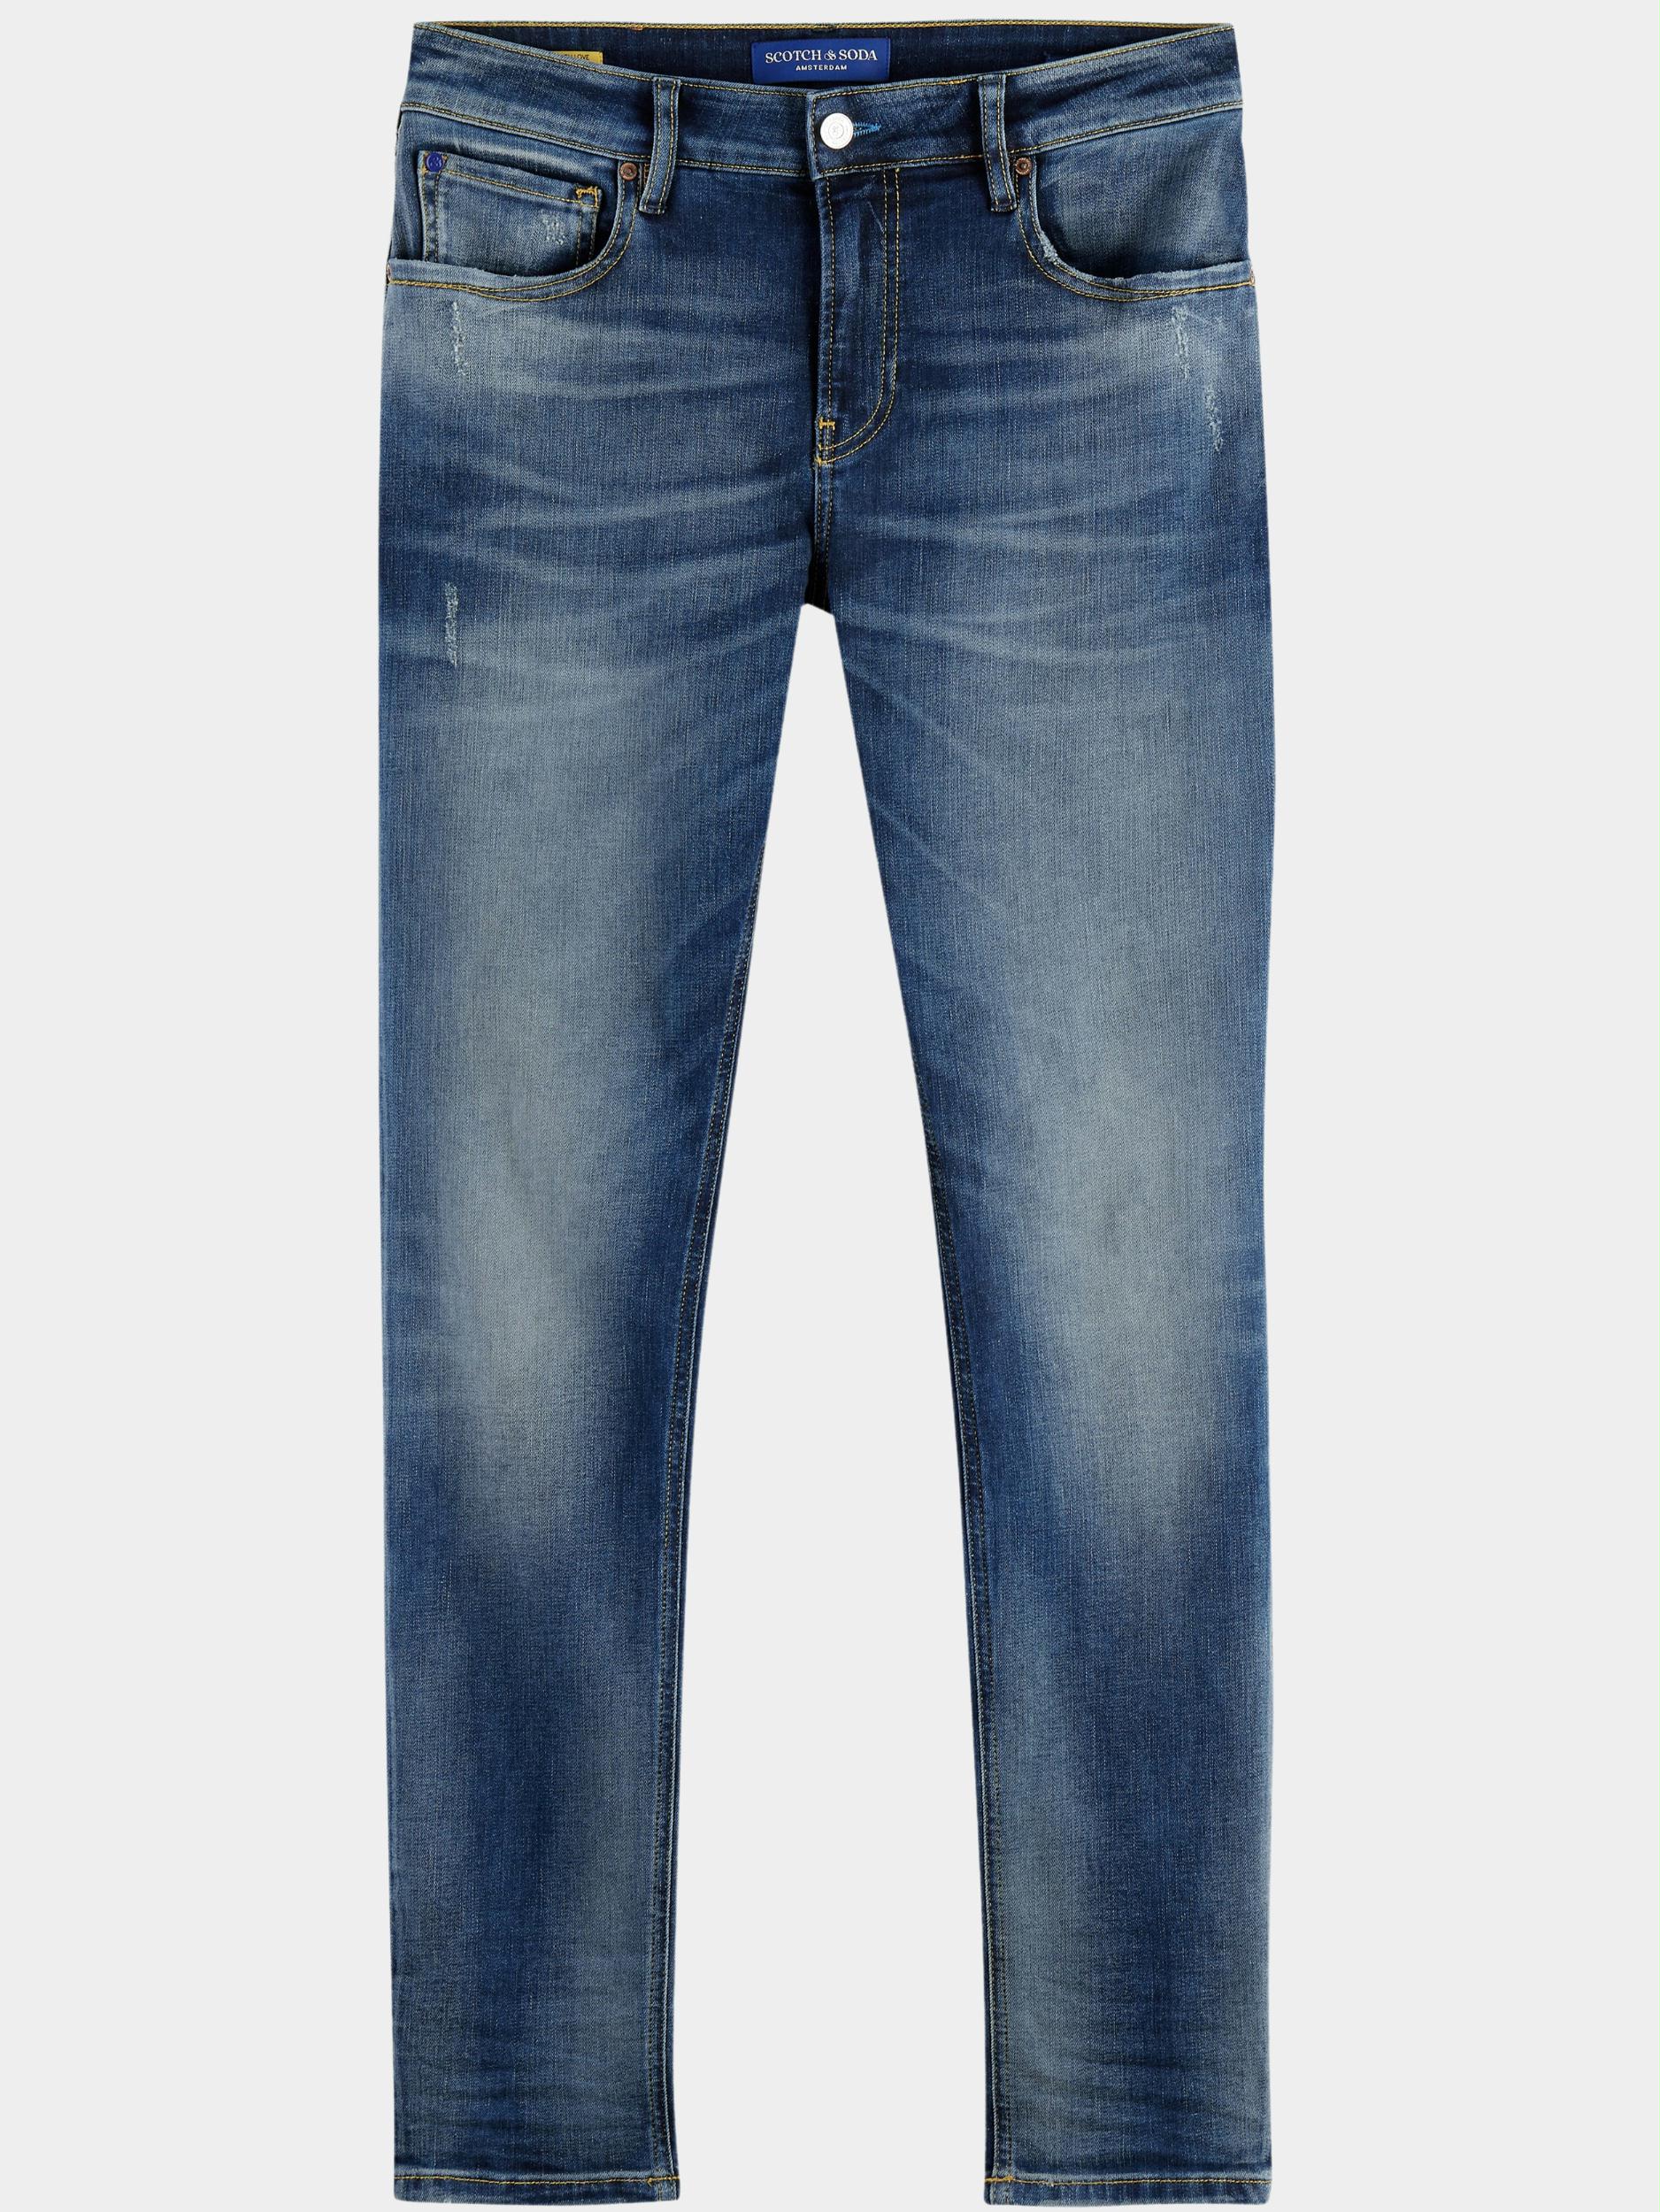 Scotch Soda 5 Pocket Jeans Blauw Skim Skinny Jeans Seasonal Ess 168991 1031